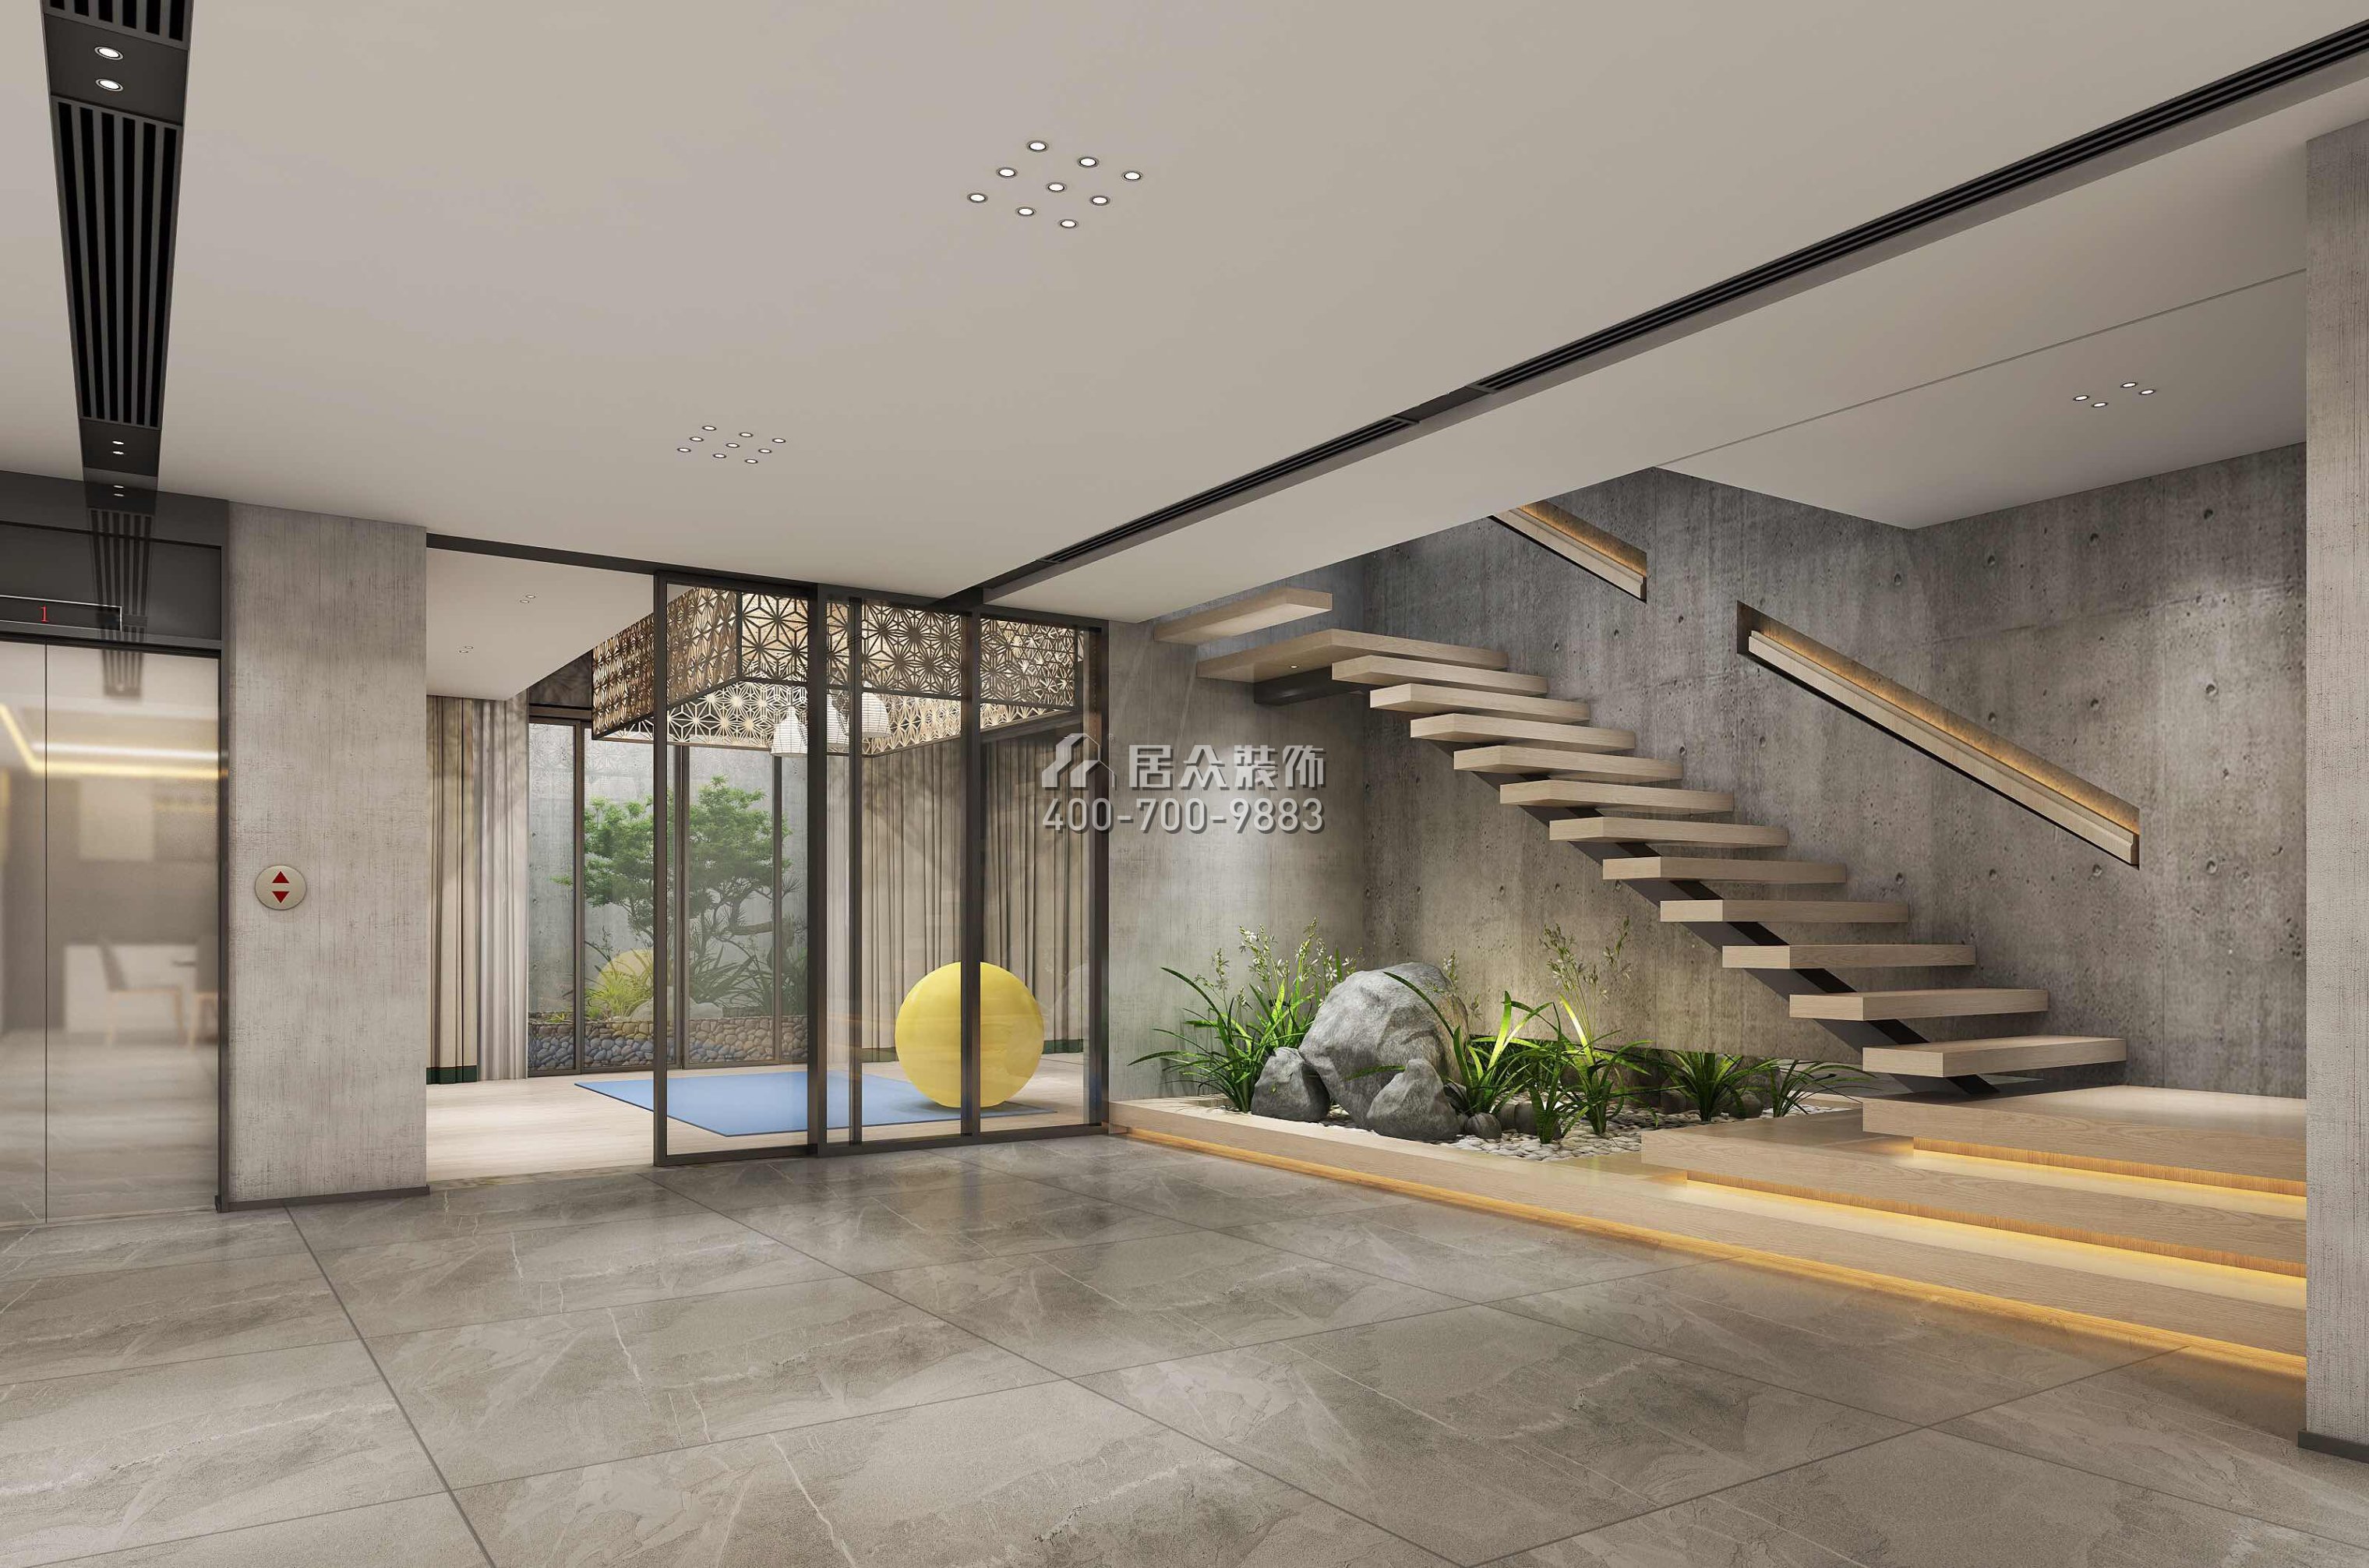 海逸豪庭1100平方米北欧风格别墅户型楼梯装修效果图